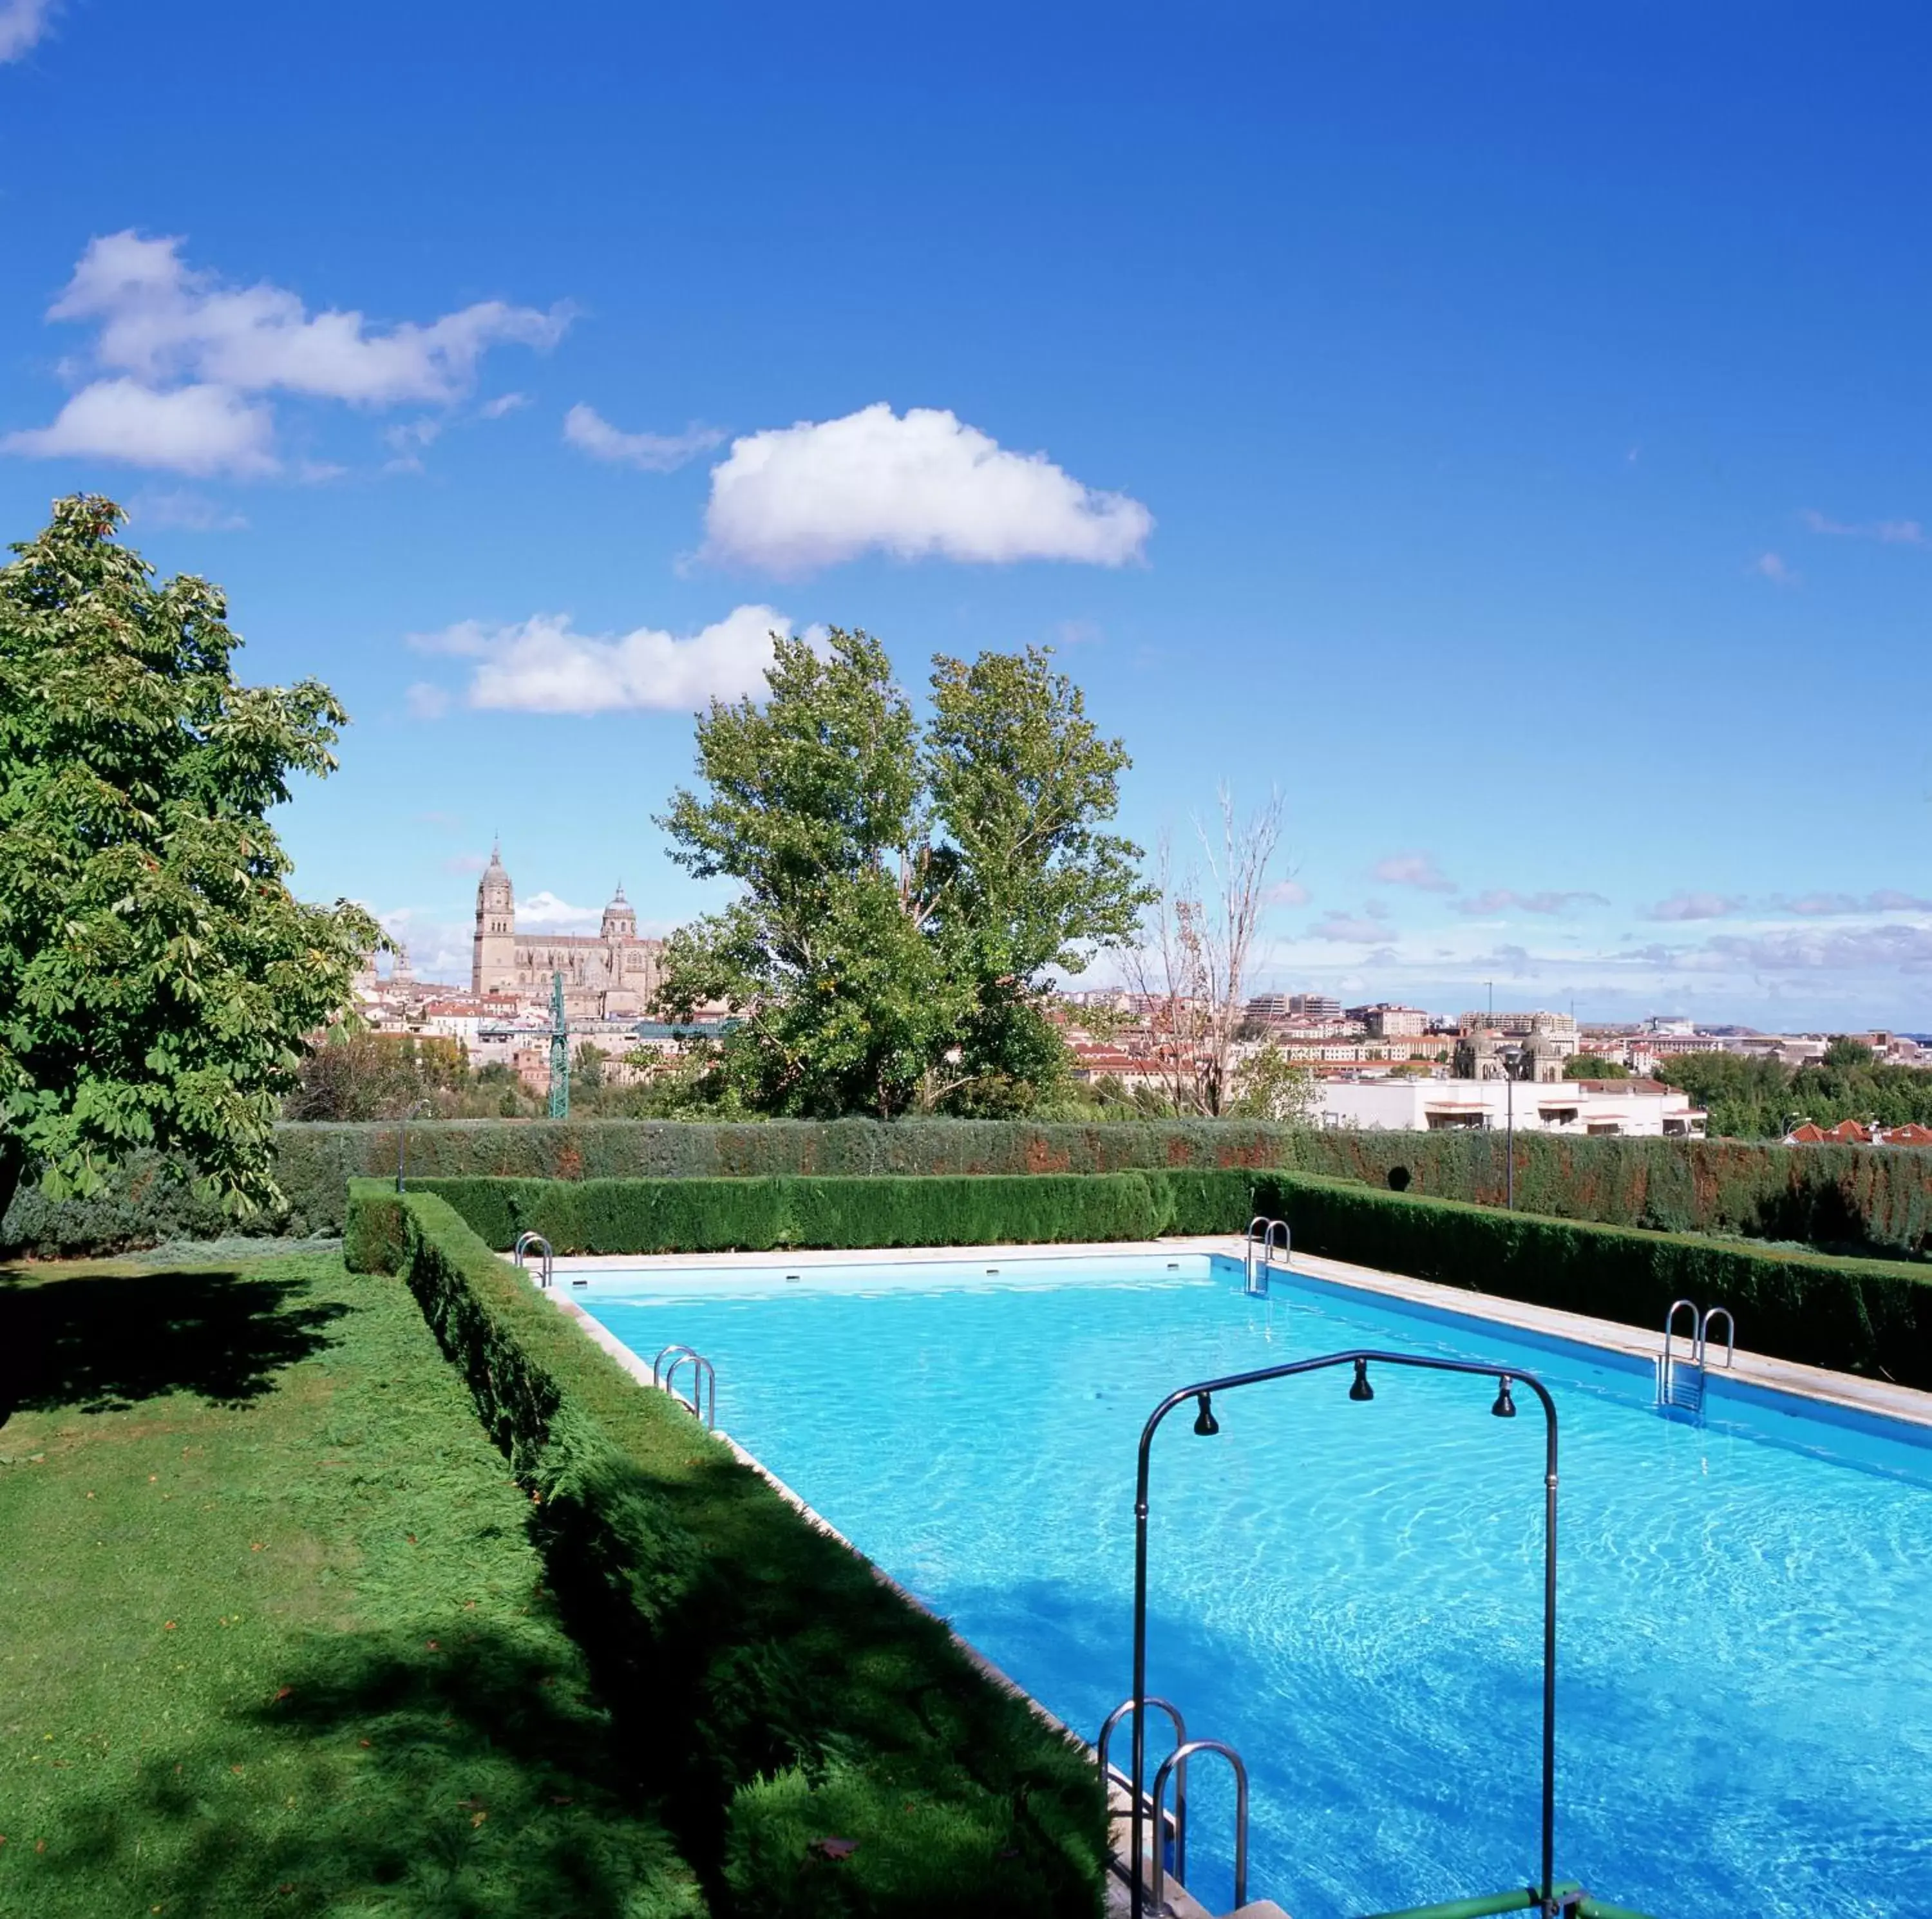 Swimming Pool in Parador de Salamanca